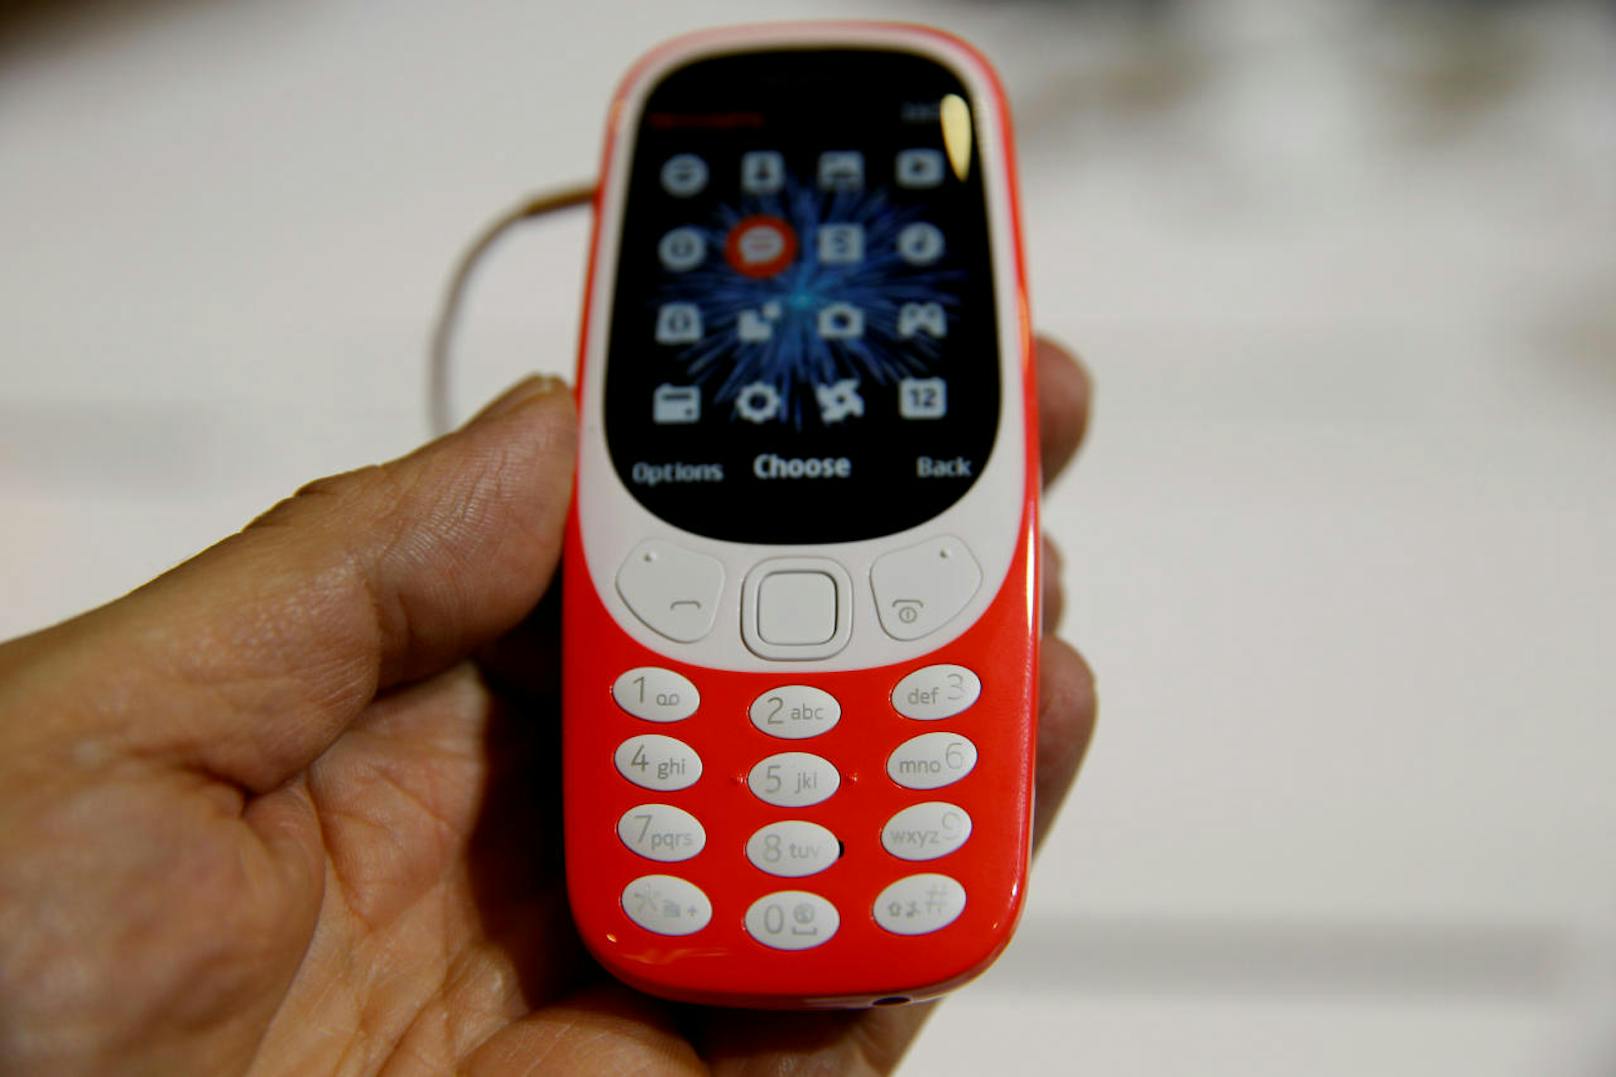 <b>14. Februar 2018:</b> Gelungenes Revival! Laut dem Analysten Neil Shah von Counterpoint Research sorgt die Marke Nokia für gute Absatzzahlen. So wurden laut seinen Berechnungen im letzten Quartal von 2017 mehr als 4,4 Millionen Handys verkauft. Der weltweite Marktanteil von Nokia-Hersteller HMD Global belaufe sich damit auf ein Prozent. Laut Shahs Analyse sind in dem Zeitraum mehr Smartphones von Nokia verkauft worden als solche von den Herstellern HTC, Lenovo, OnePlus, Sony oder Google. Marktführend sei Nokia mittlerweile bei den sogenannten Feature-Phones, wie dem Nokia 3310. Hier betrage der weltweite Marktanteil 15 Prozent.